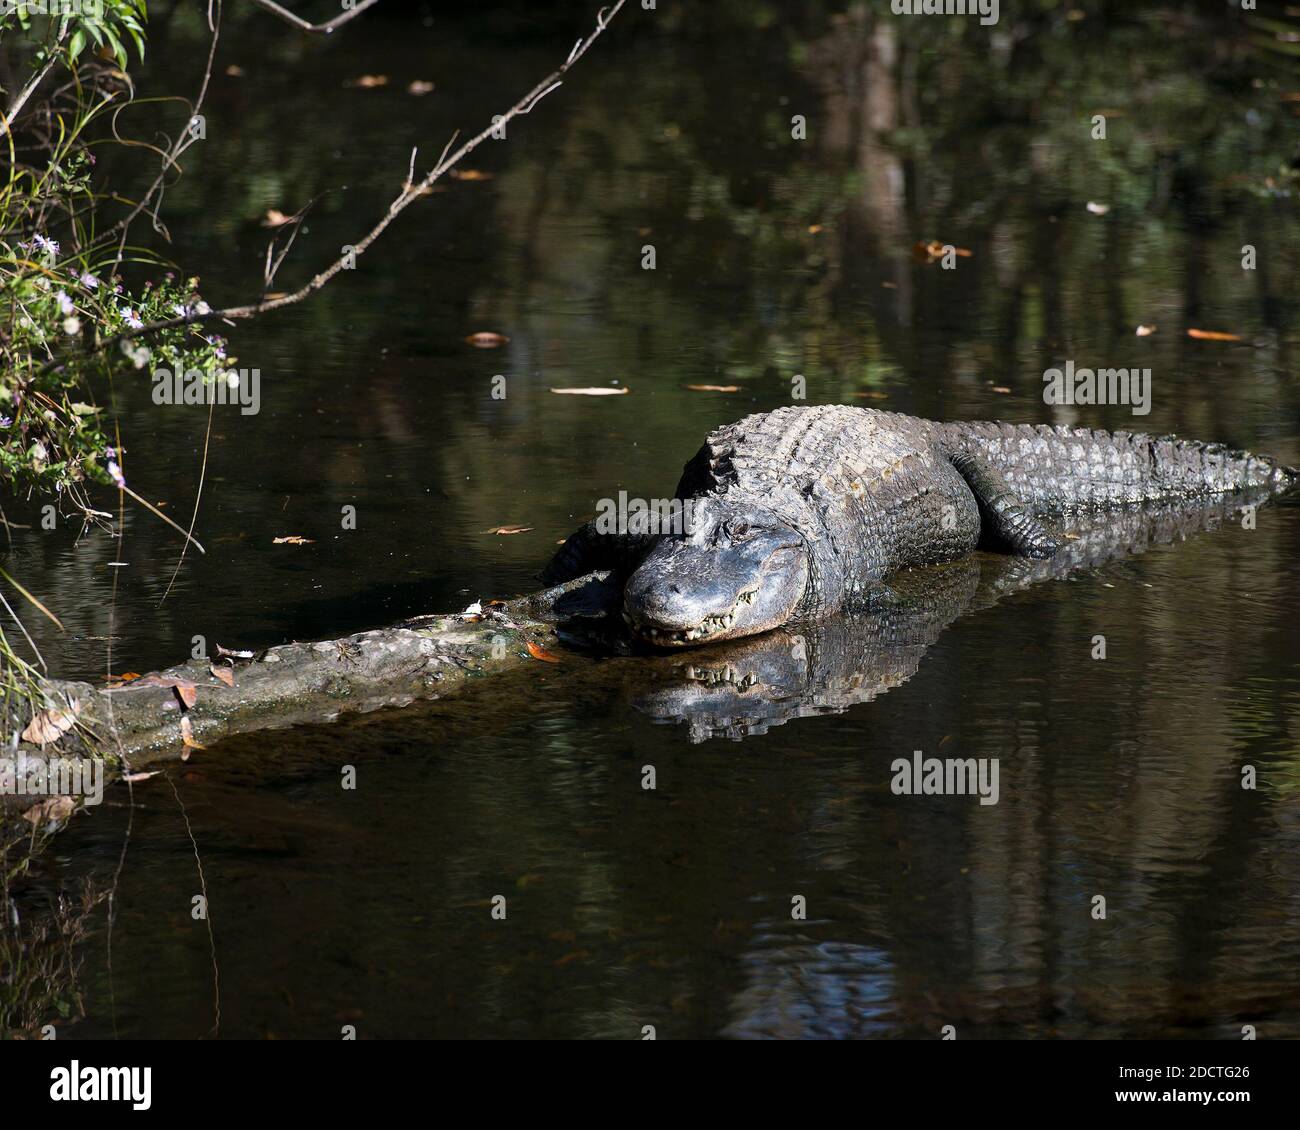 Vista ravvicinata del profilo dell'alligatore nell'acqua crogiolandosi alla luce del sole con un riflesso del corpo nell'acqua che mostra la testa, l'occhio, nel suo ambiente. Immagine. Foto Stock